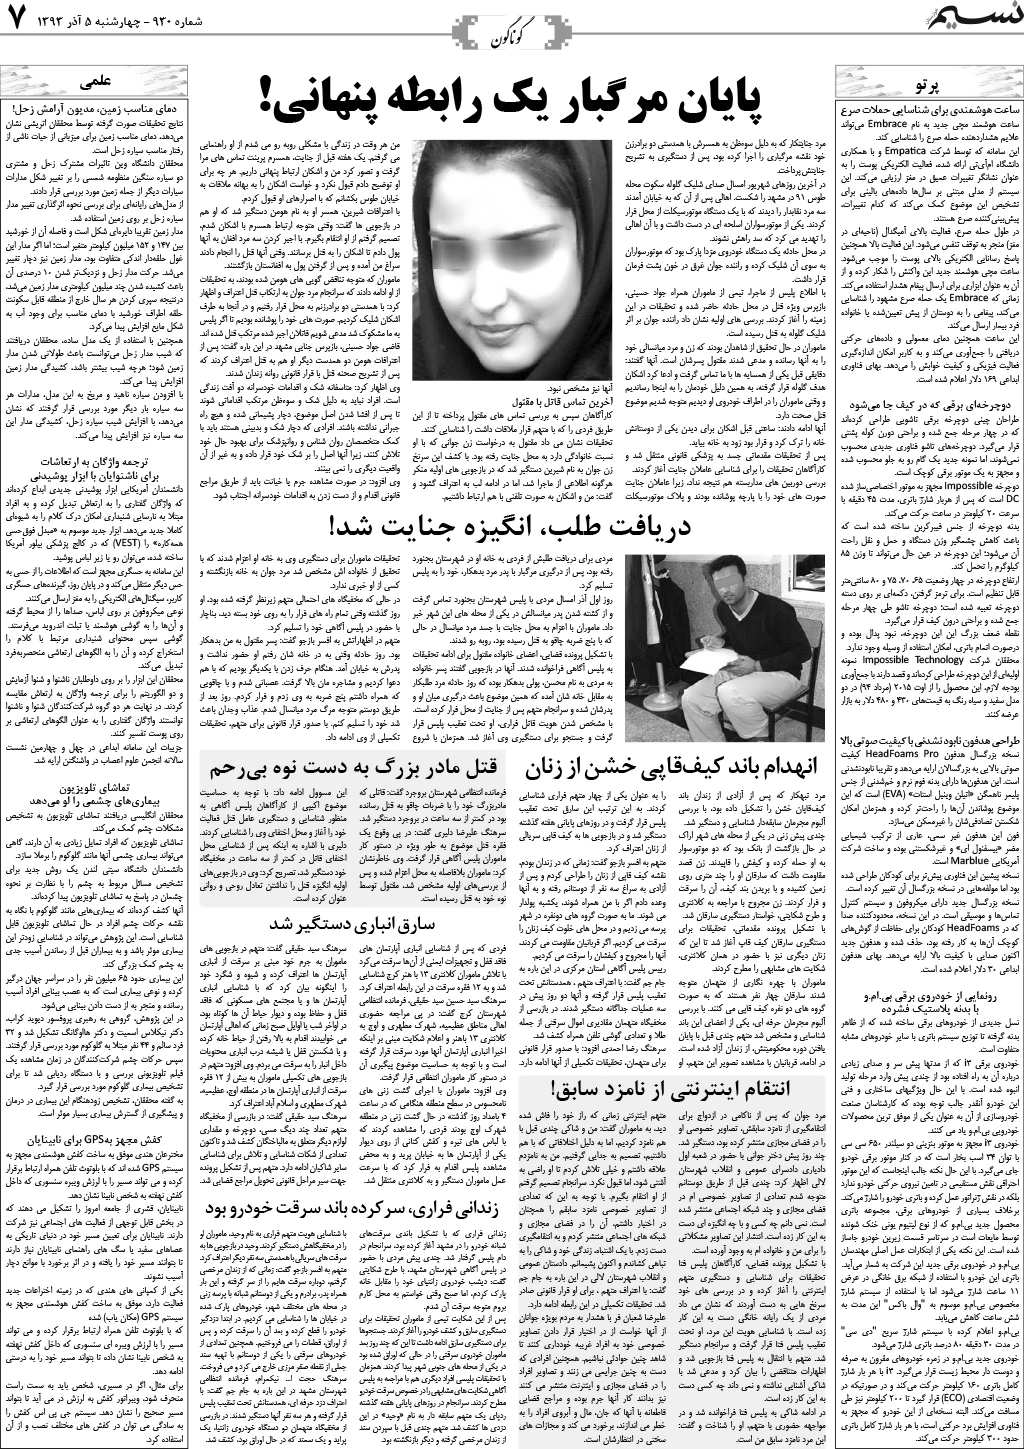 صفحه گوناگون روزنامه نسیم شماره 930